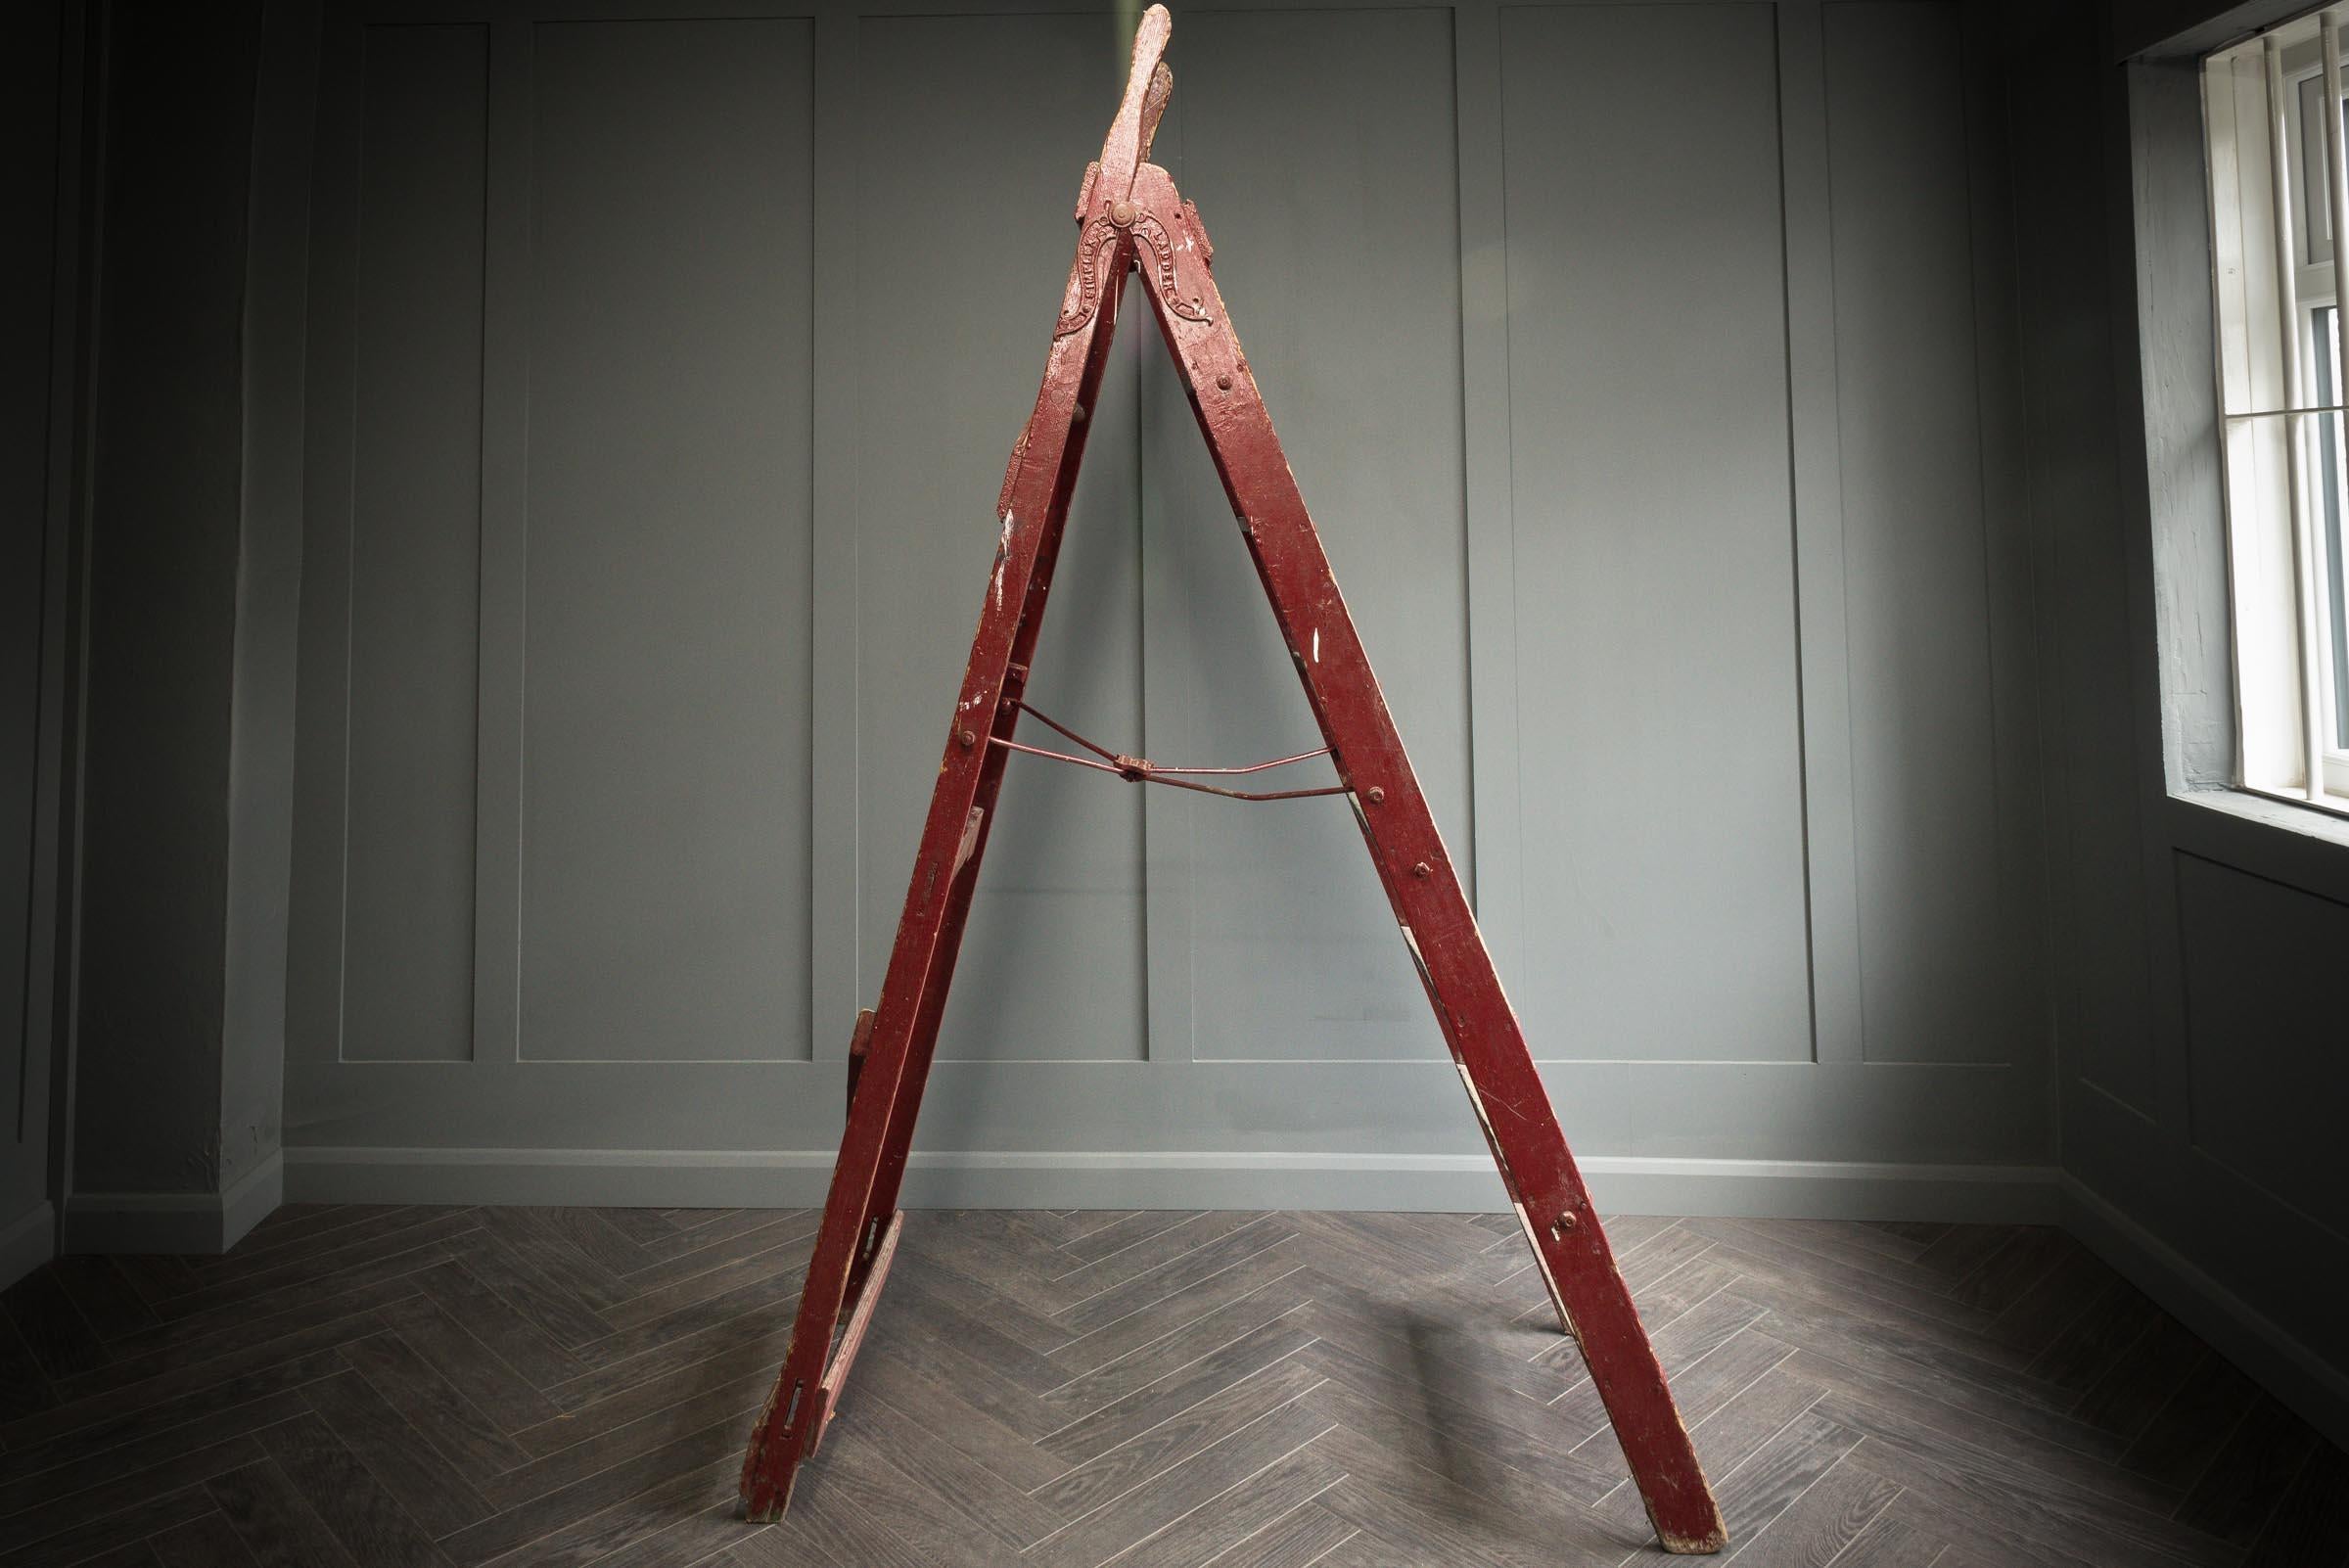 Un grand escabeau original en bois simplex, lavé d'un rouge vif, se compose de sept marches. L'échelle se ferme grâce à deux charnières métalliques situées de part et d'autre de l'échelle. L'échelle présente des marques de peinture d'origine